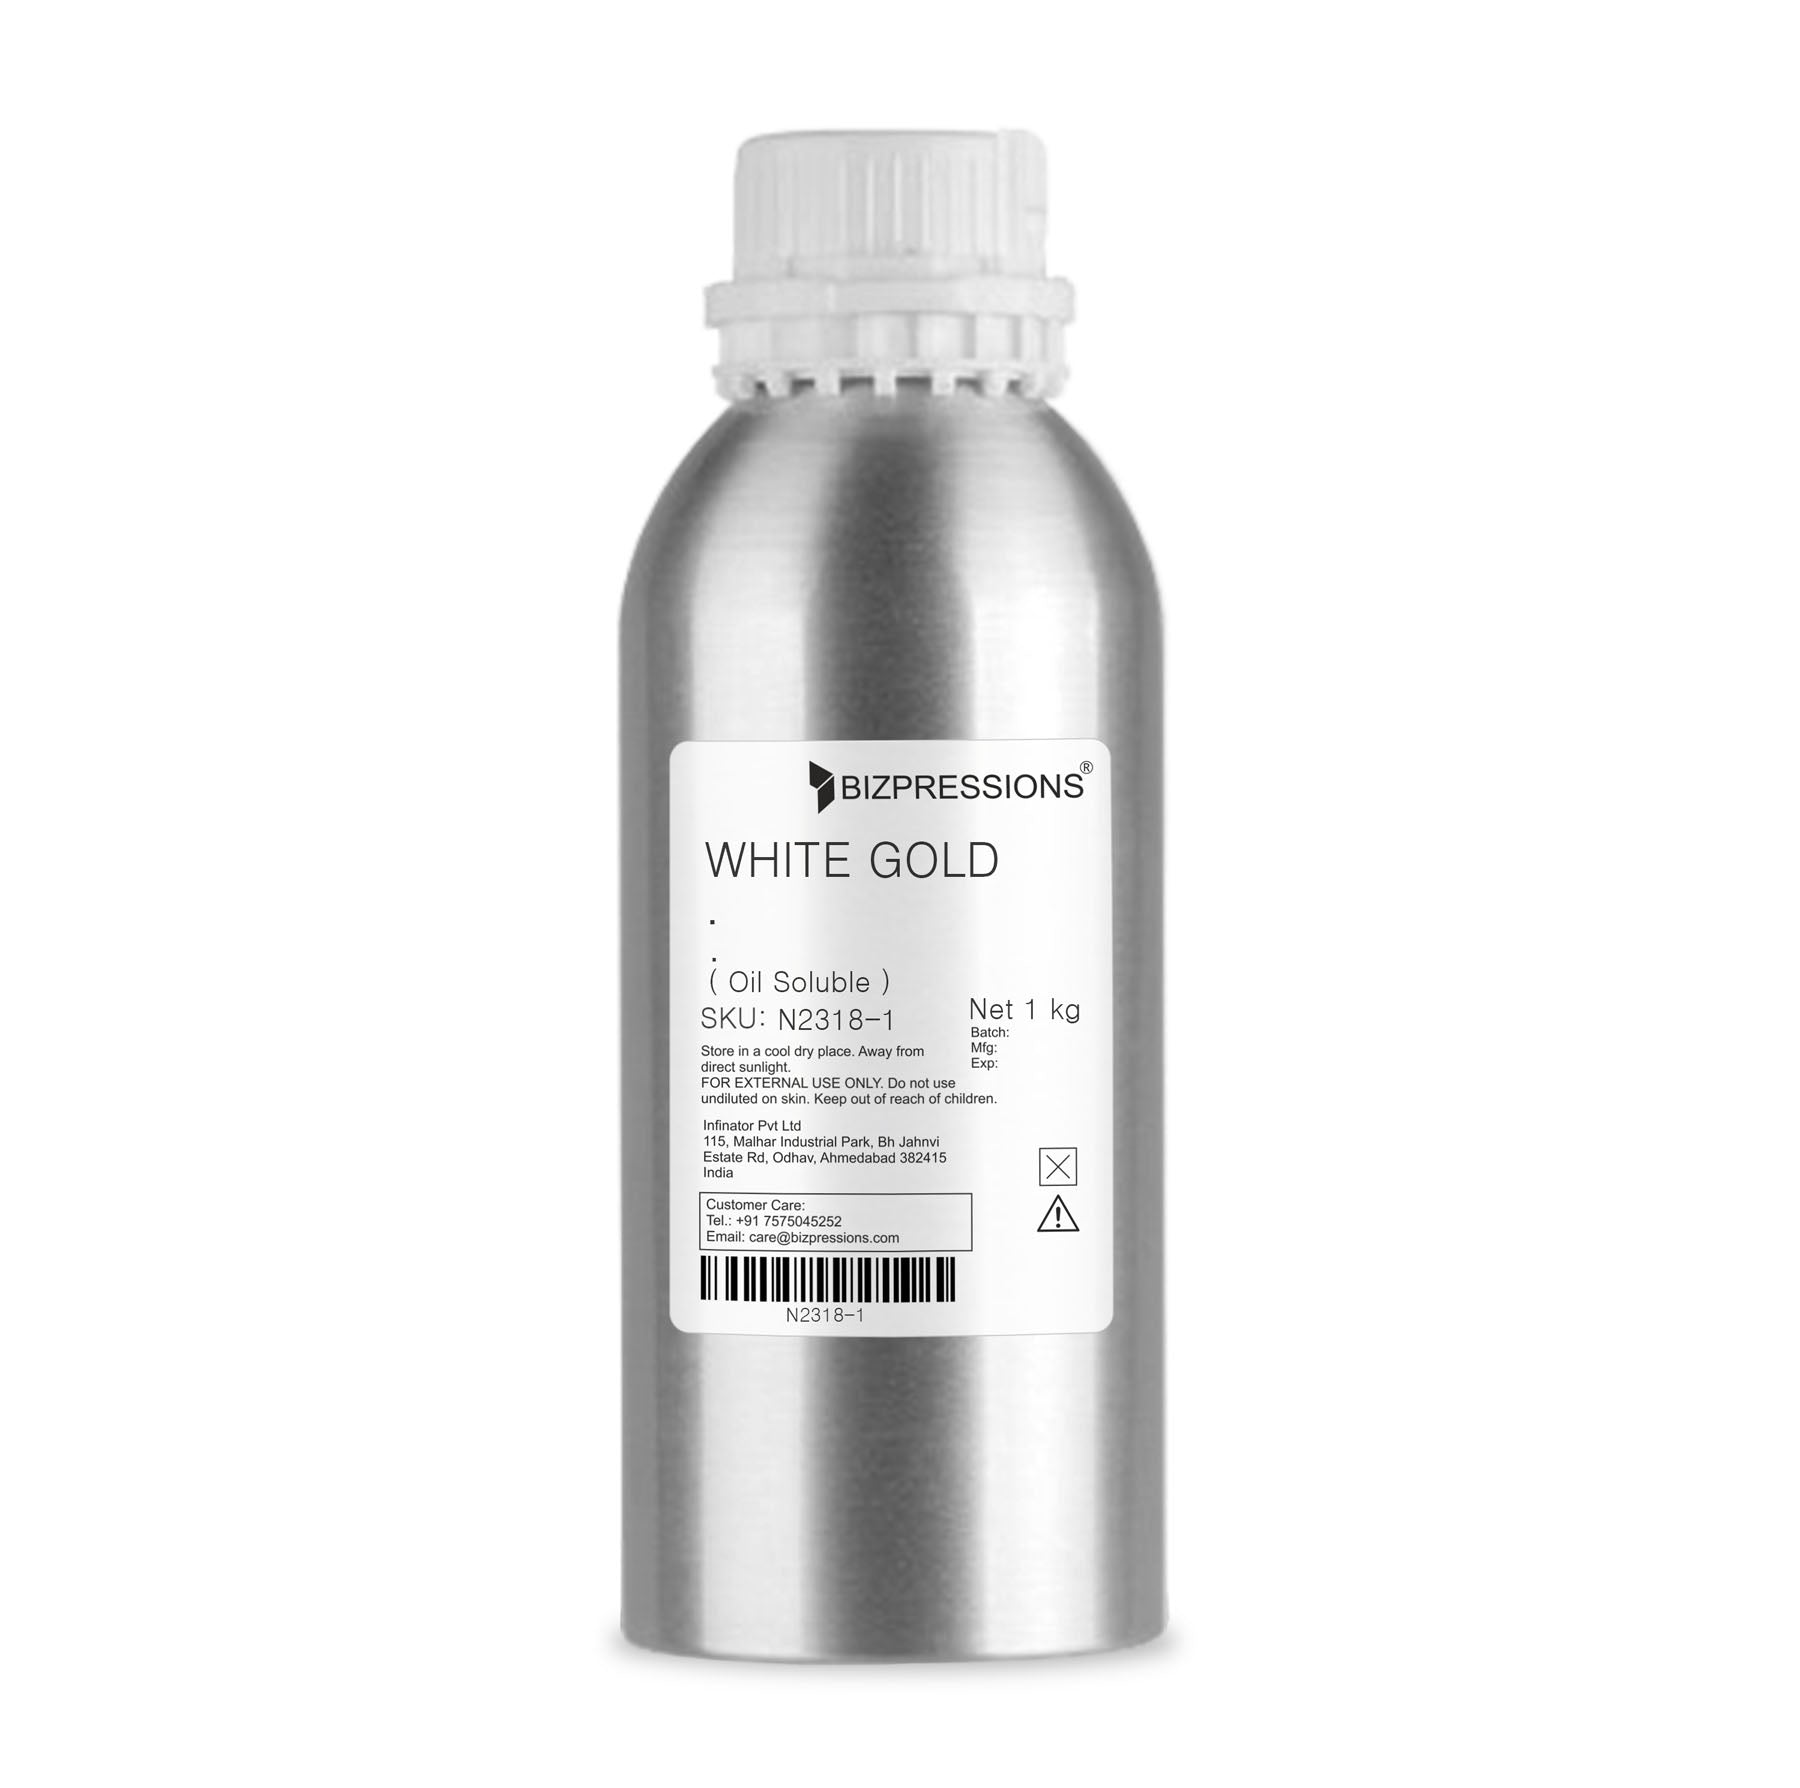 WHITE GOLD - Fragrance ( Oil Soluble ) - 1 kg